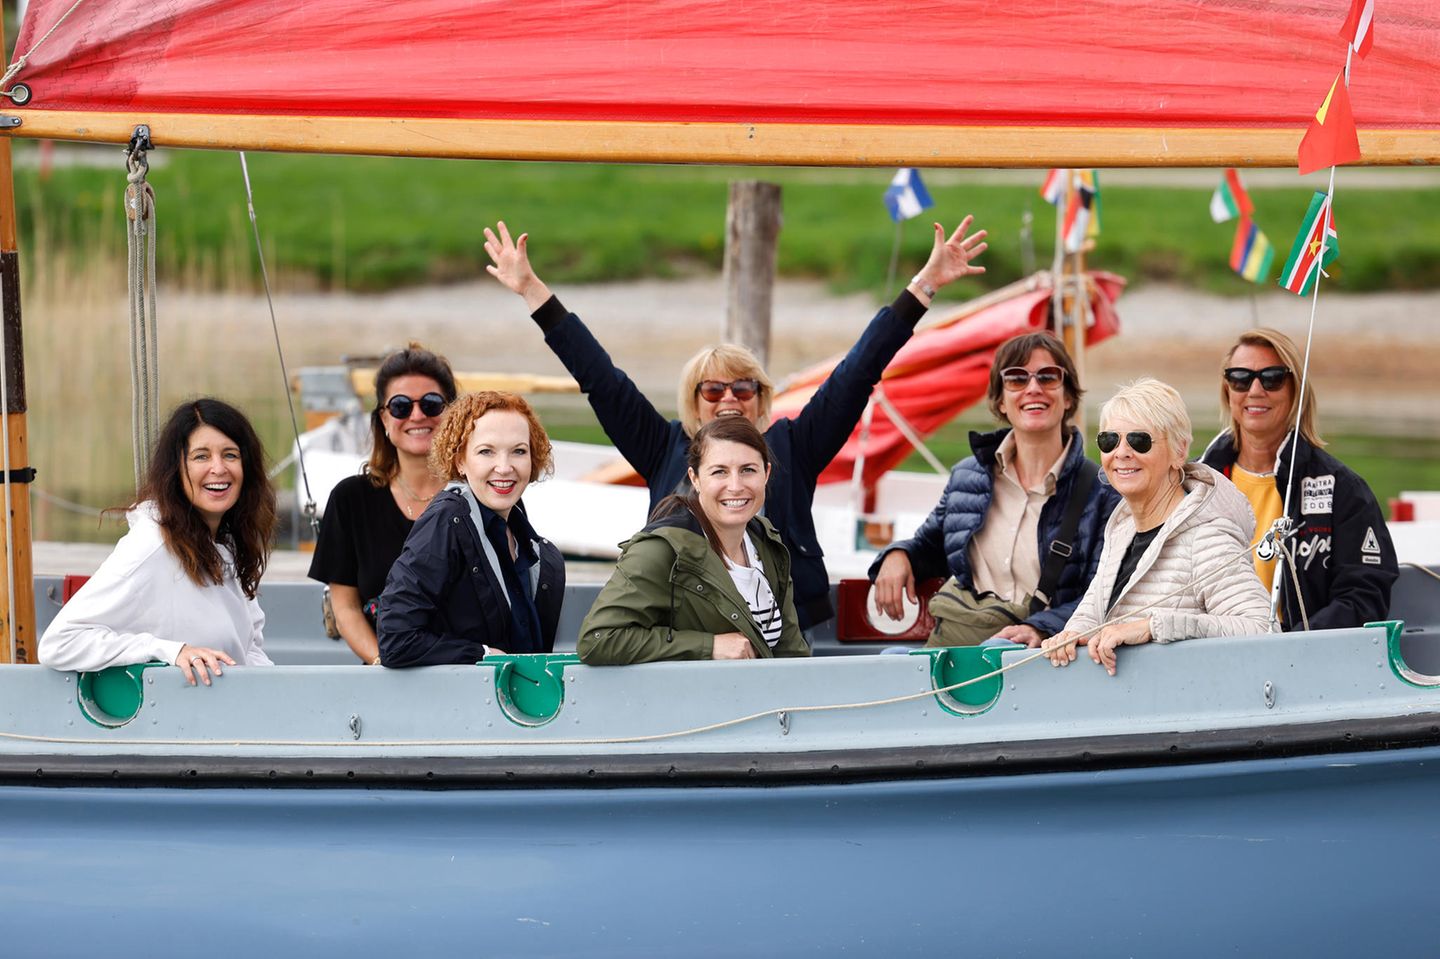 So geht ausgelassen! Unsere Leading Women strahlen um die Wette und haben Spaß beim gemeinsamen Bootsausflug.